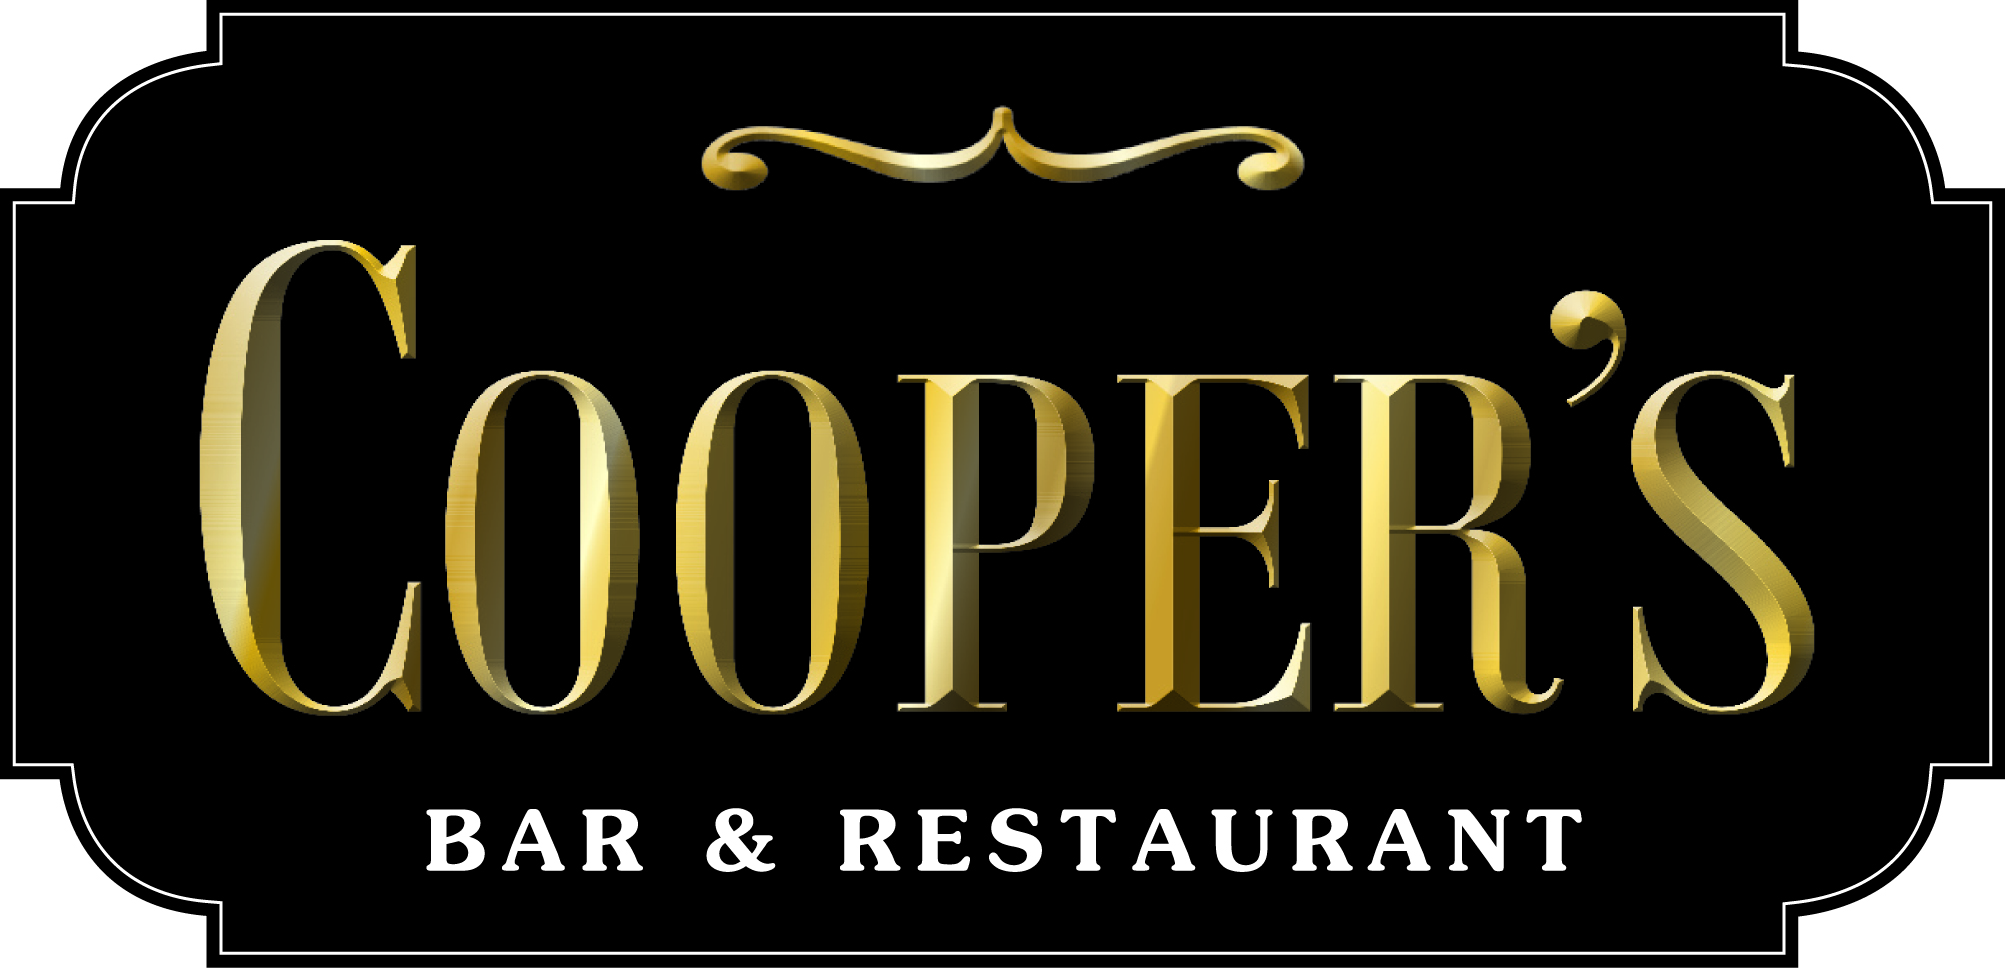 Cooper's Bar & Restaurant